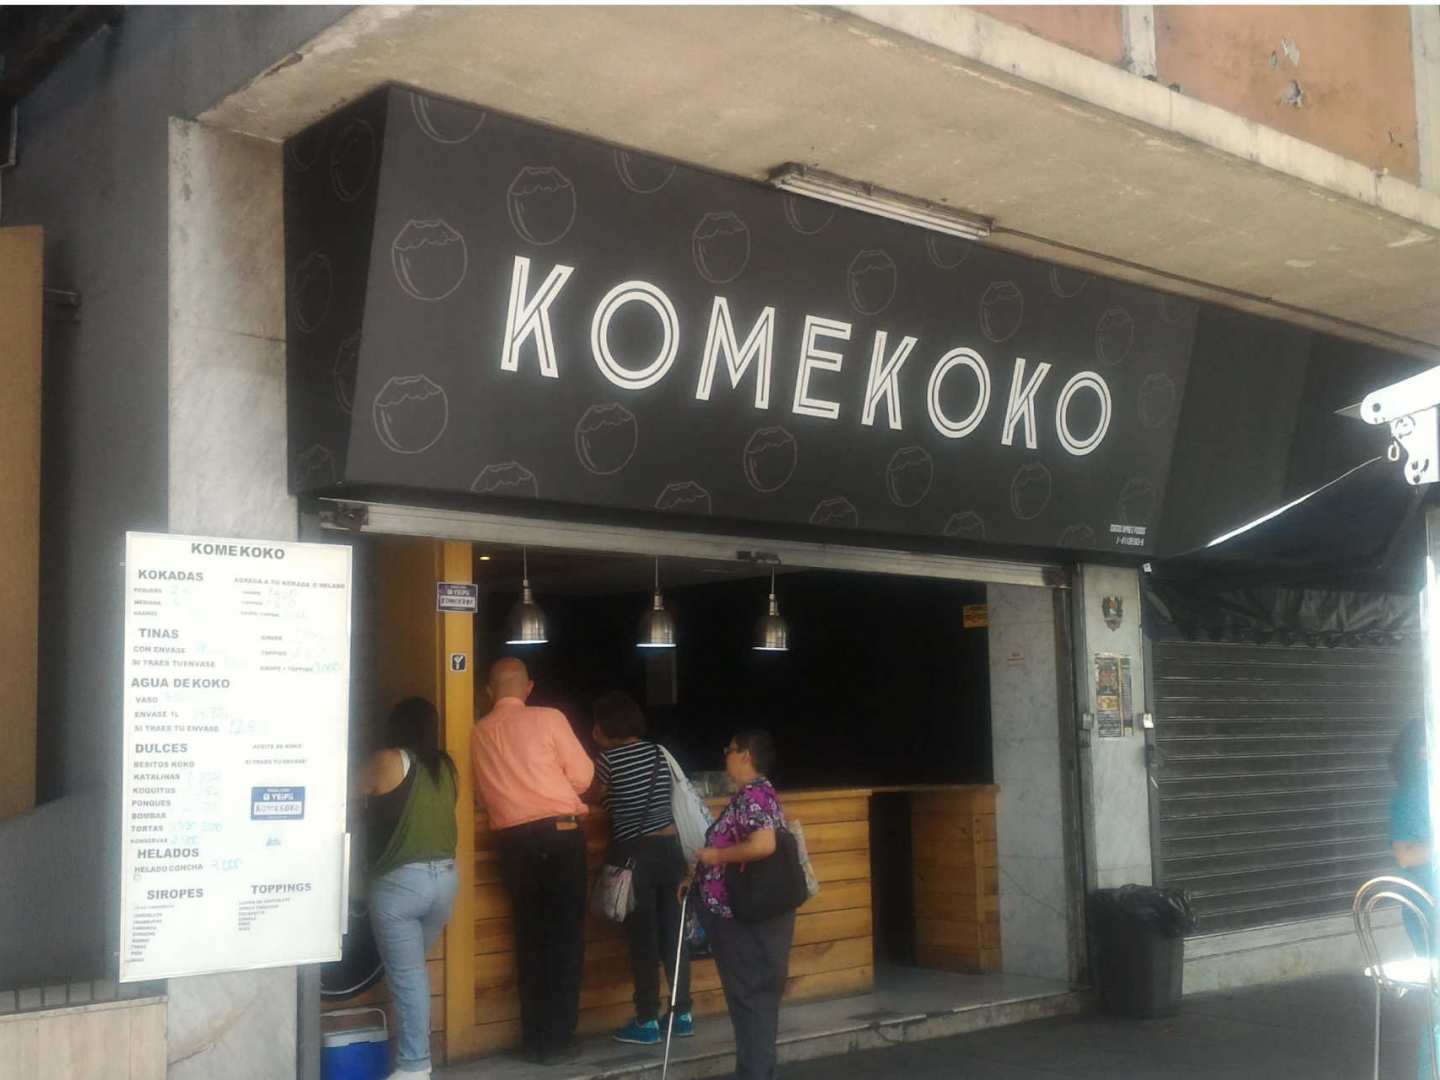 Komekoko